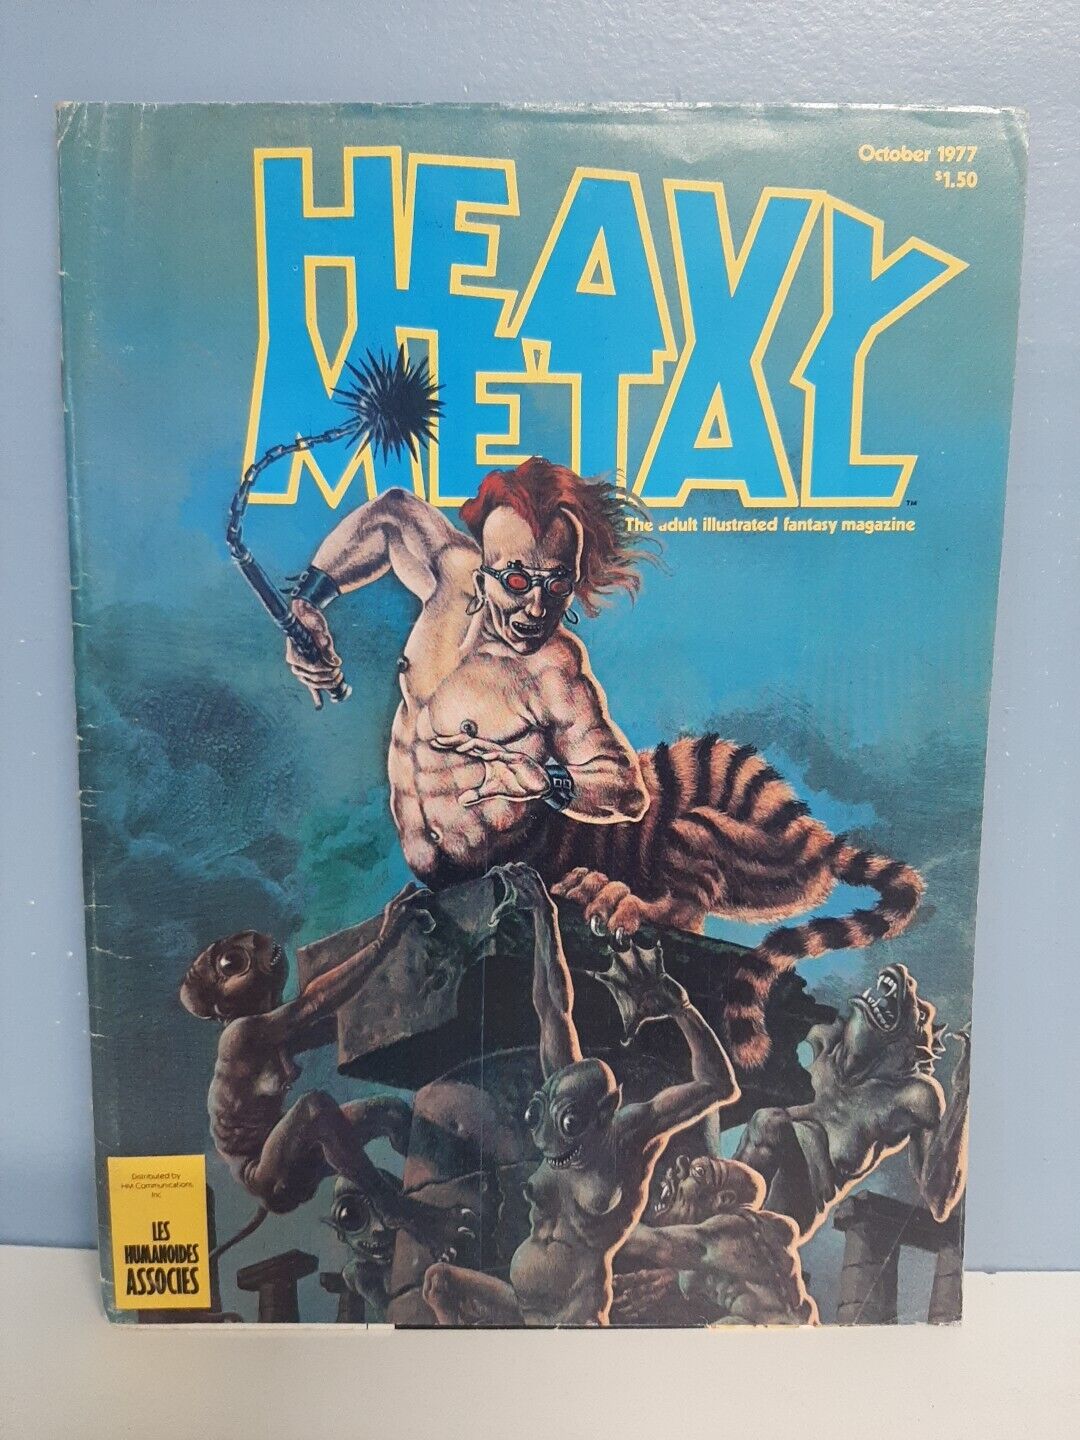 Vtg. Heavy Metal Magazine Oct. 1977 Fantasy Magazine